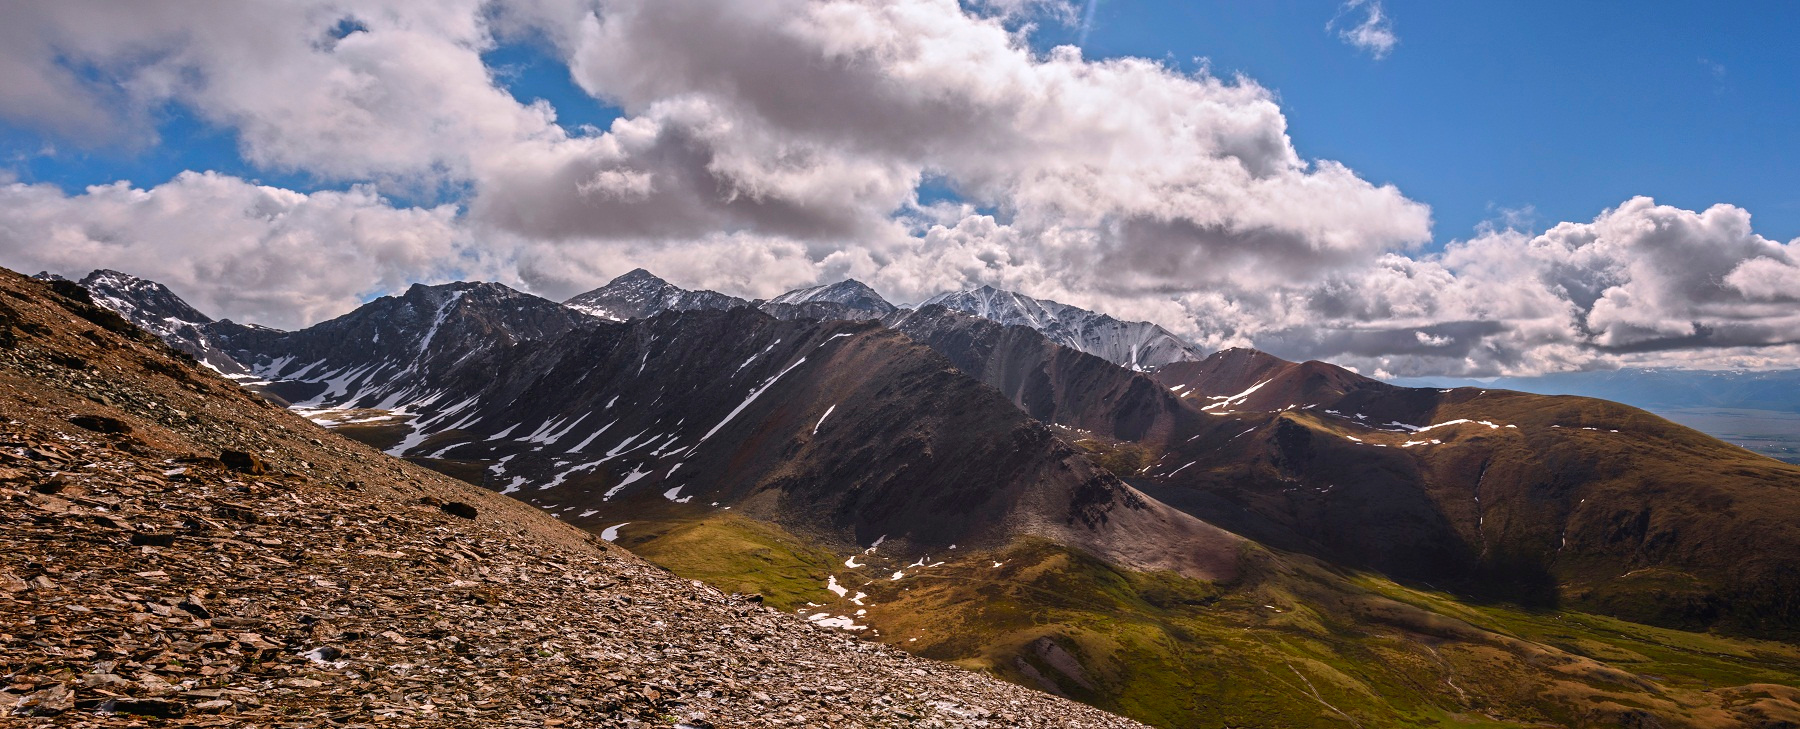 В Алтайских горах... алтай горы акташ ретронслятор снег шапки простор небо свет тень